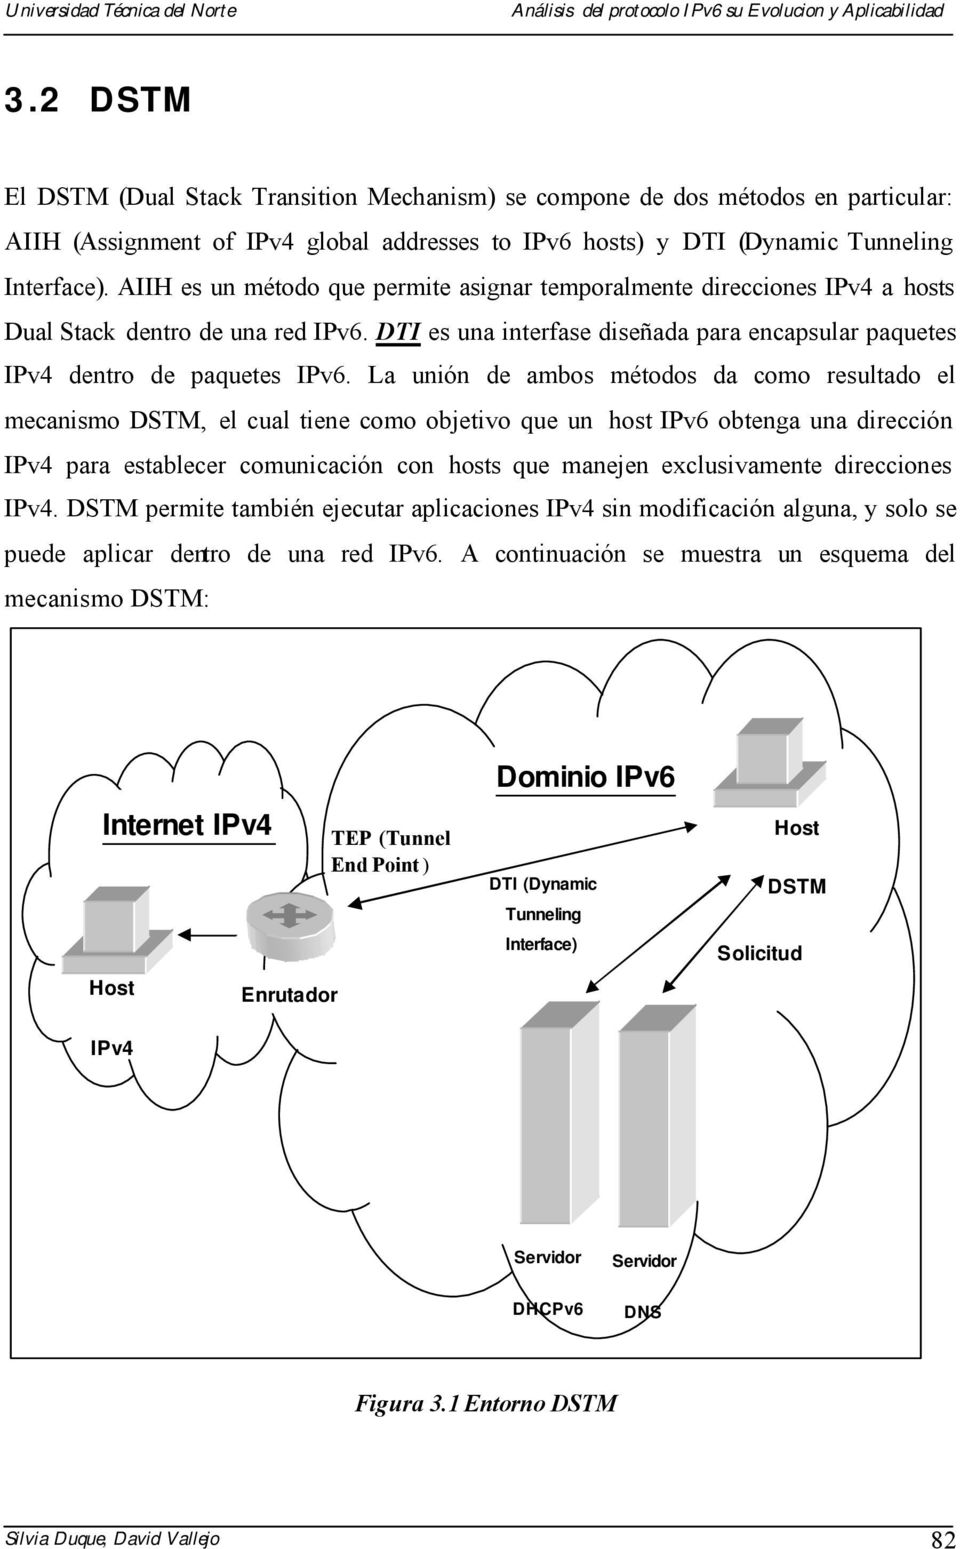 La unión de ambos métodos da como resultado el mecanismo DSTM, el cual tiene como objetivo que un host IPv6 obtenga una dirección IPv4 para establecer comunicación con hosts que manejen